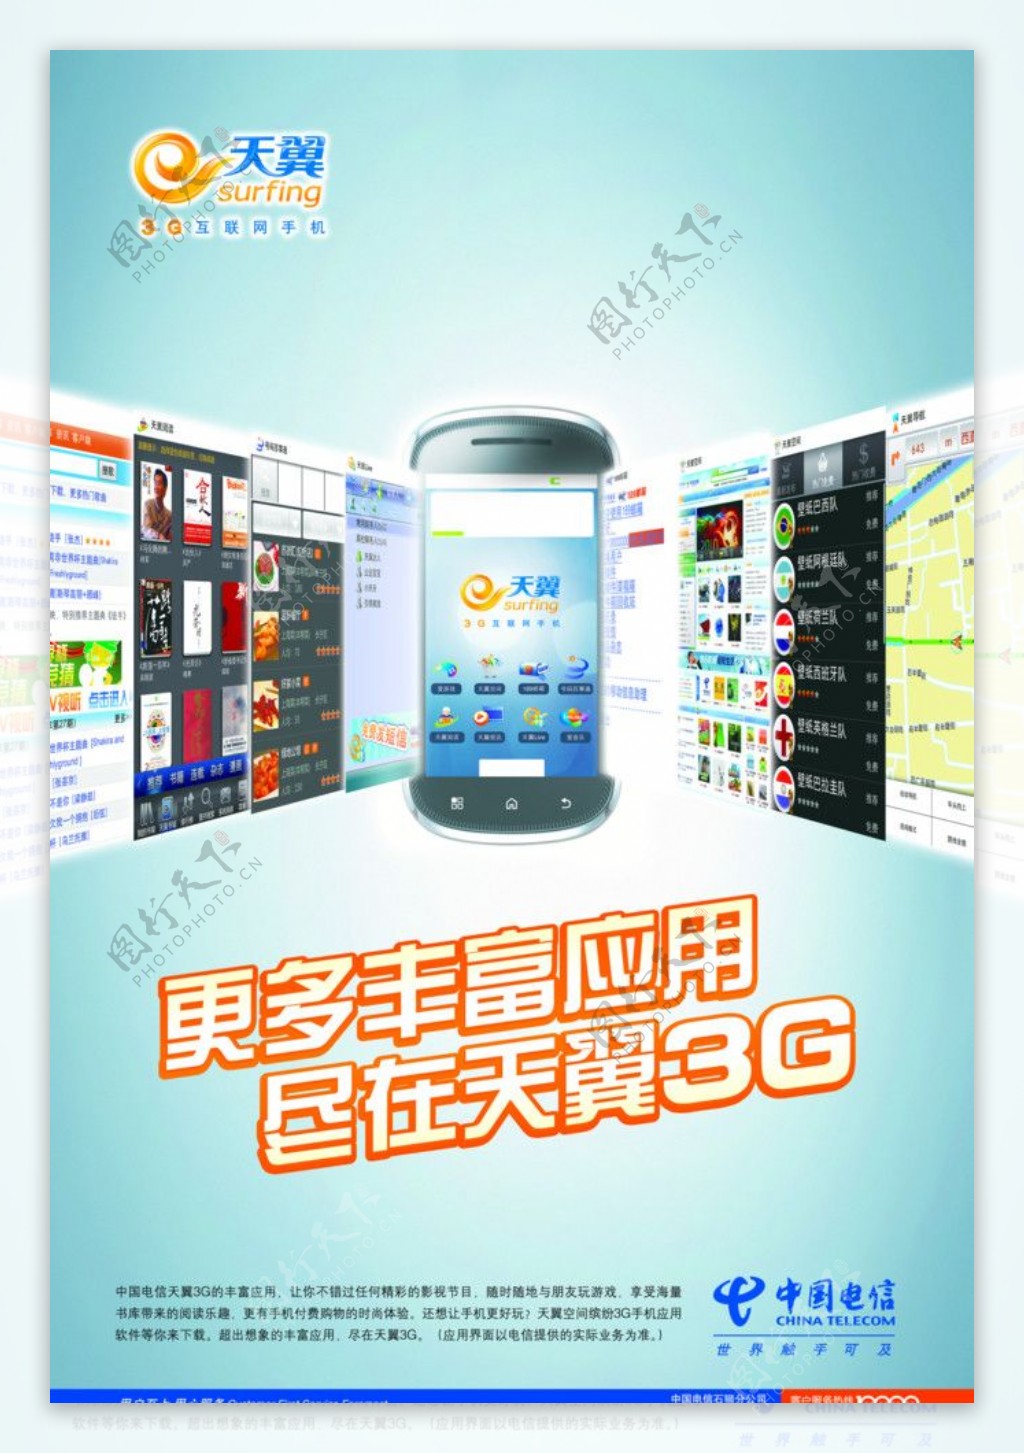 中国电信天翼3G应用图片